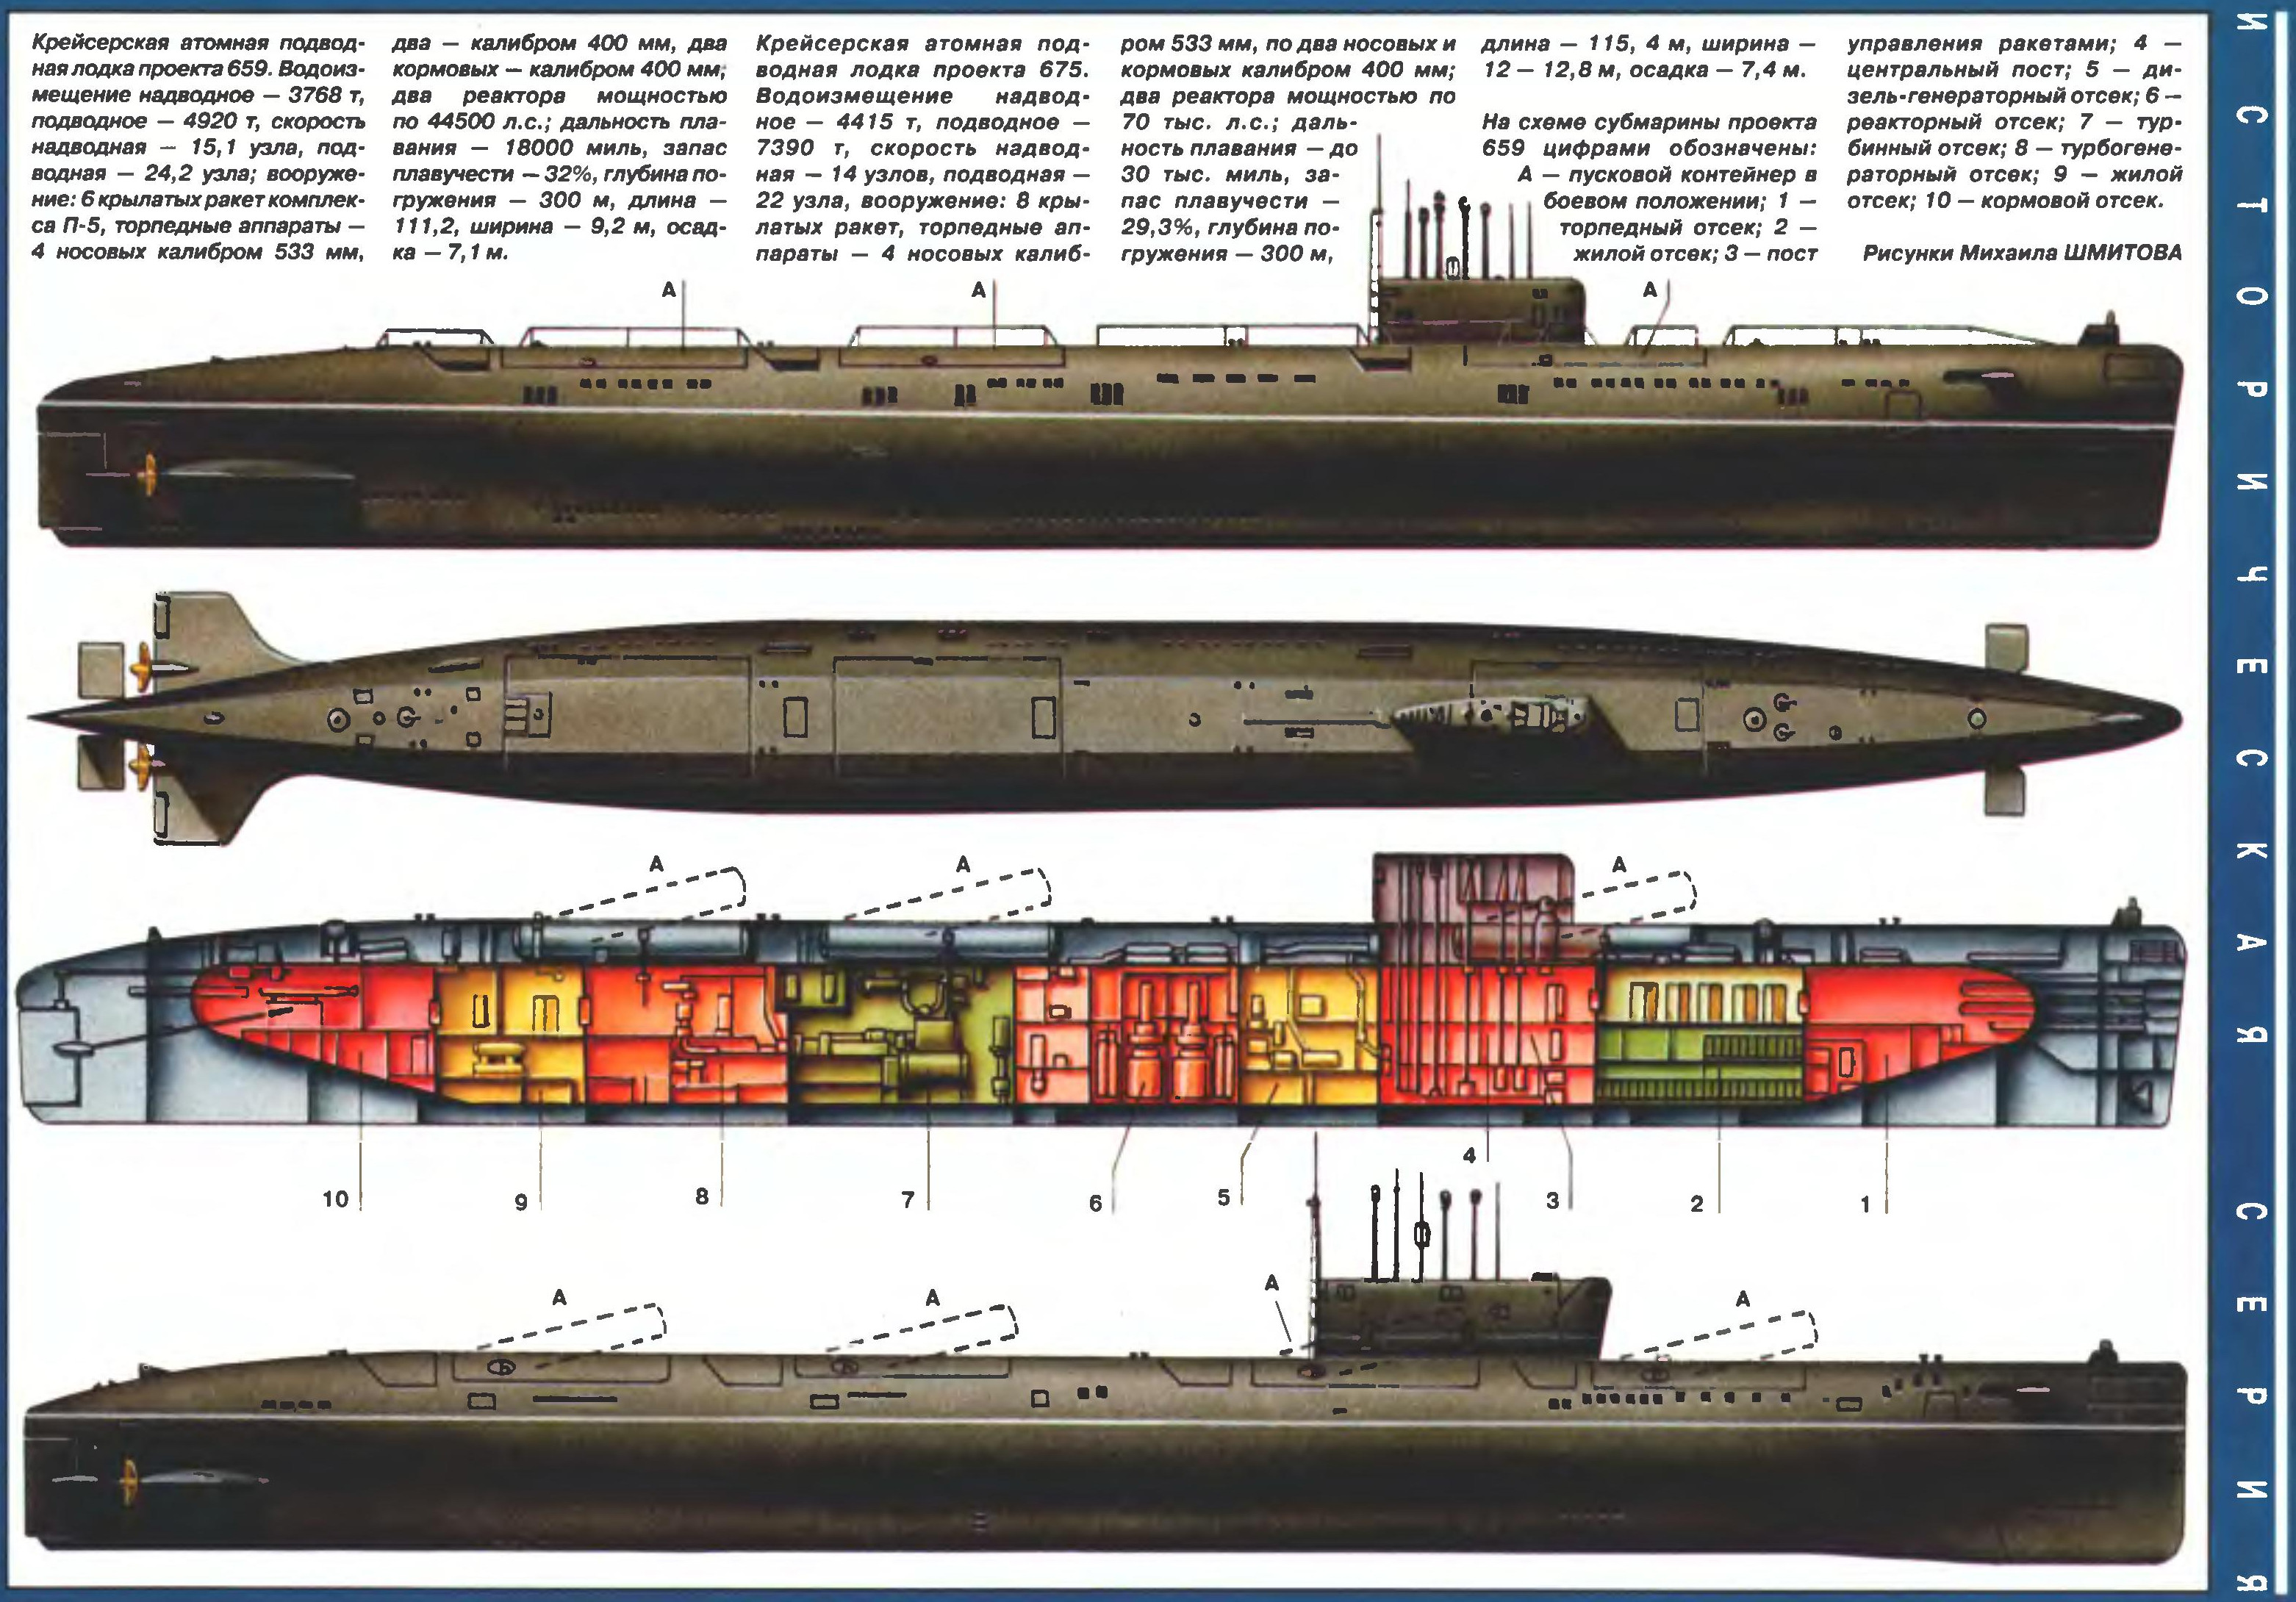 Пл пр т. Атомная подводная лодка 675 проекта. АПЛ проекта 659. Подводная лодка проекта 659т. Атомная подводная лодка (АПЛ) К-431 пр.675.